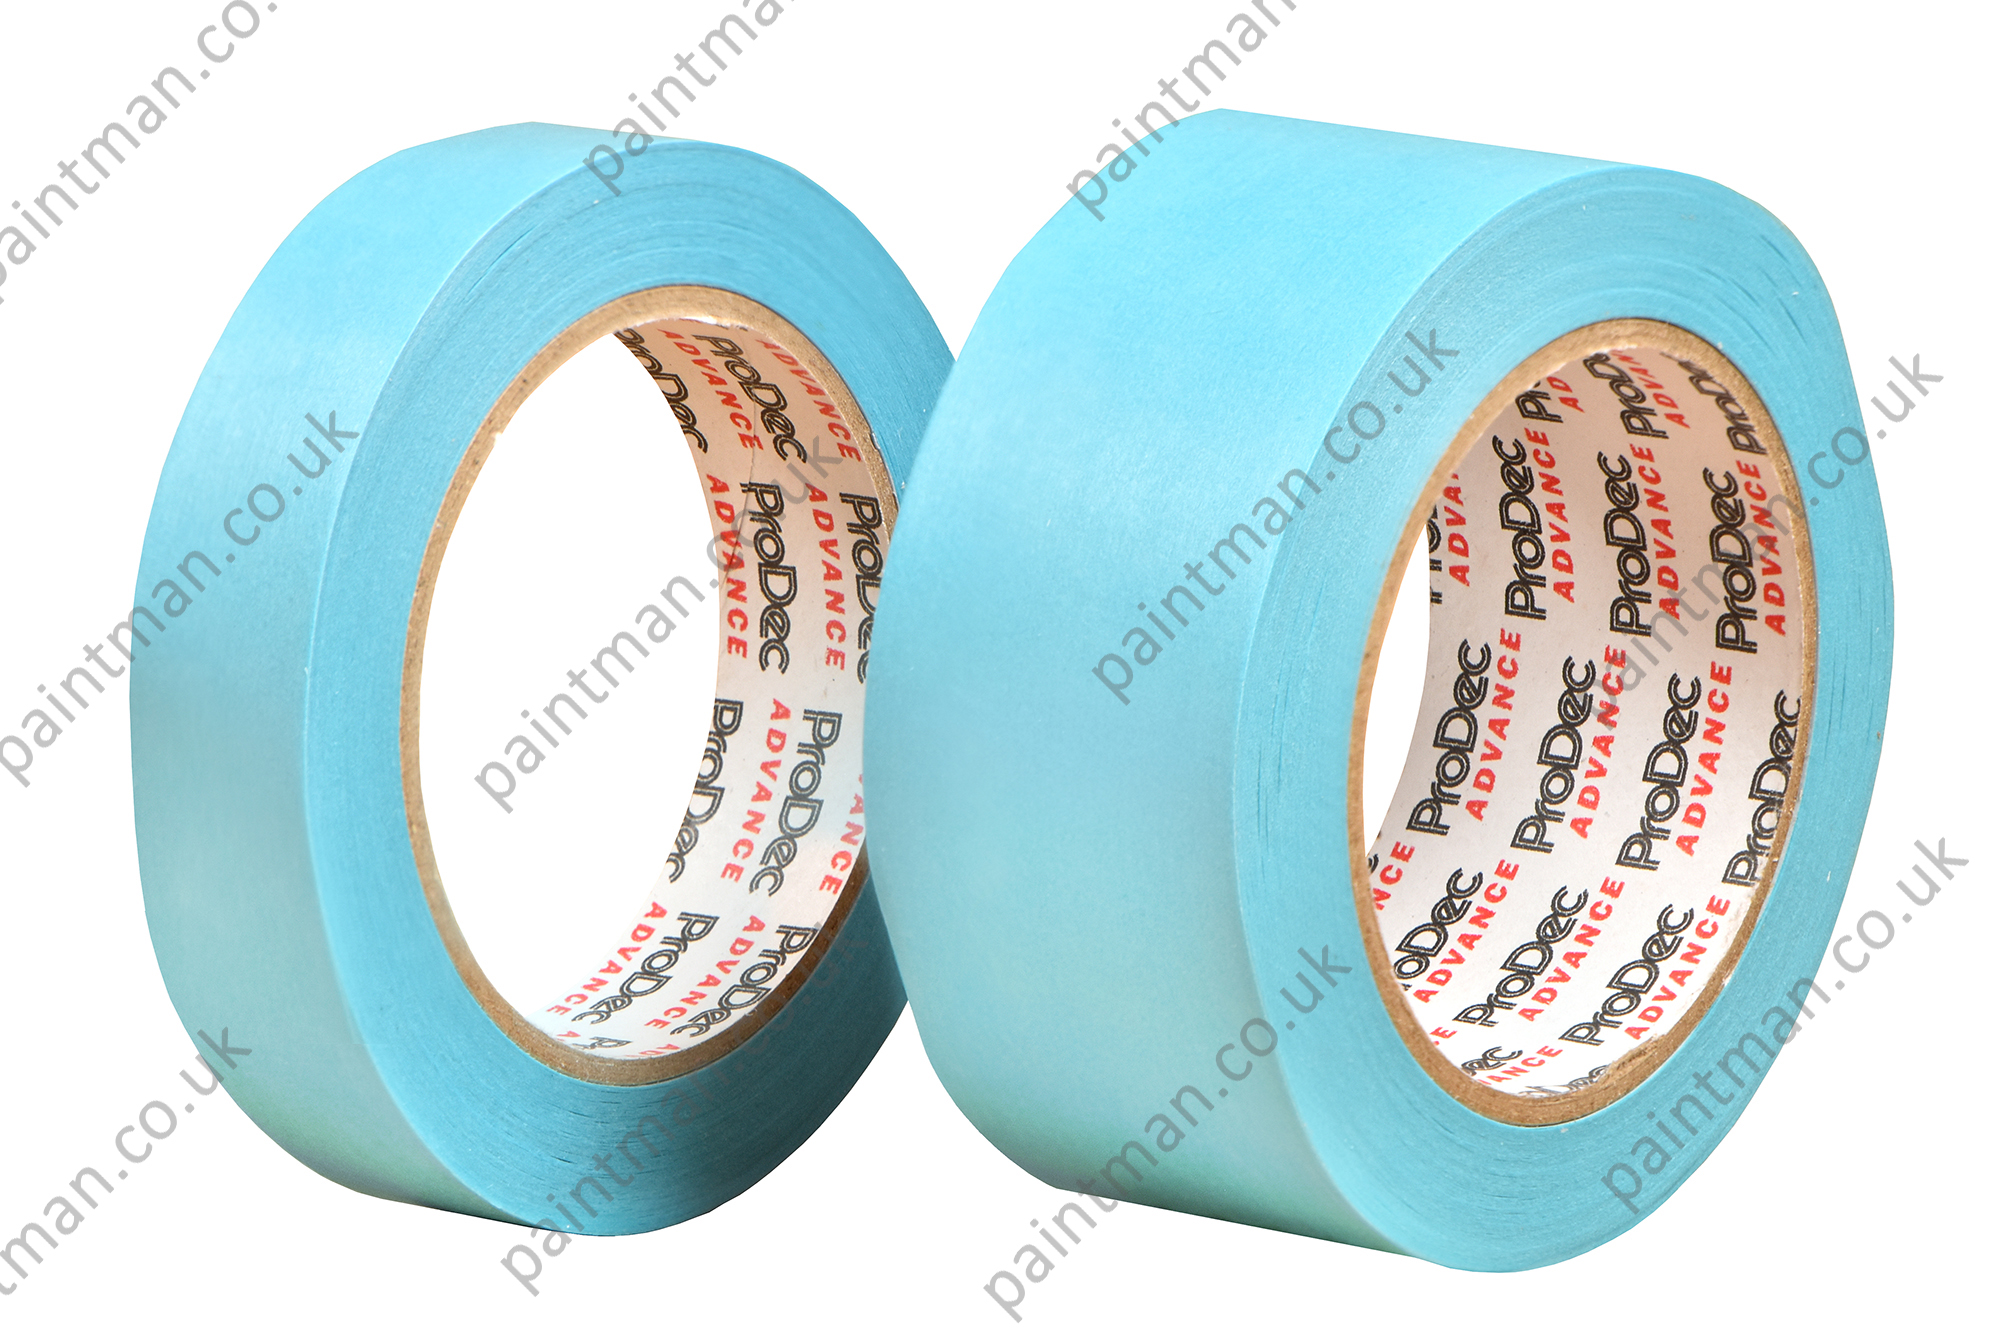 Shurtape CP27 14 Day Blue UV Resistant Masking Tape 24mm